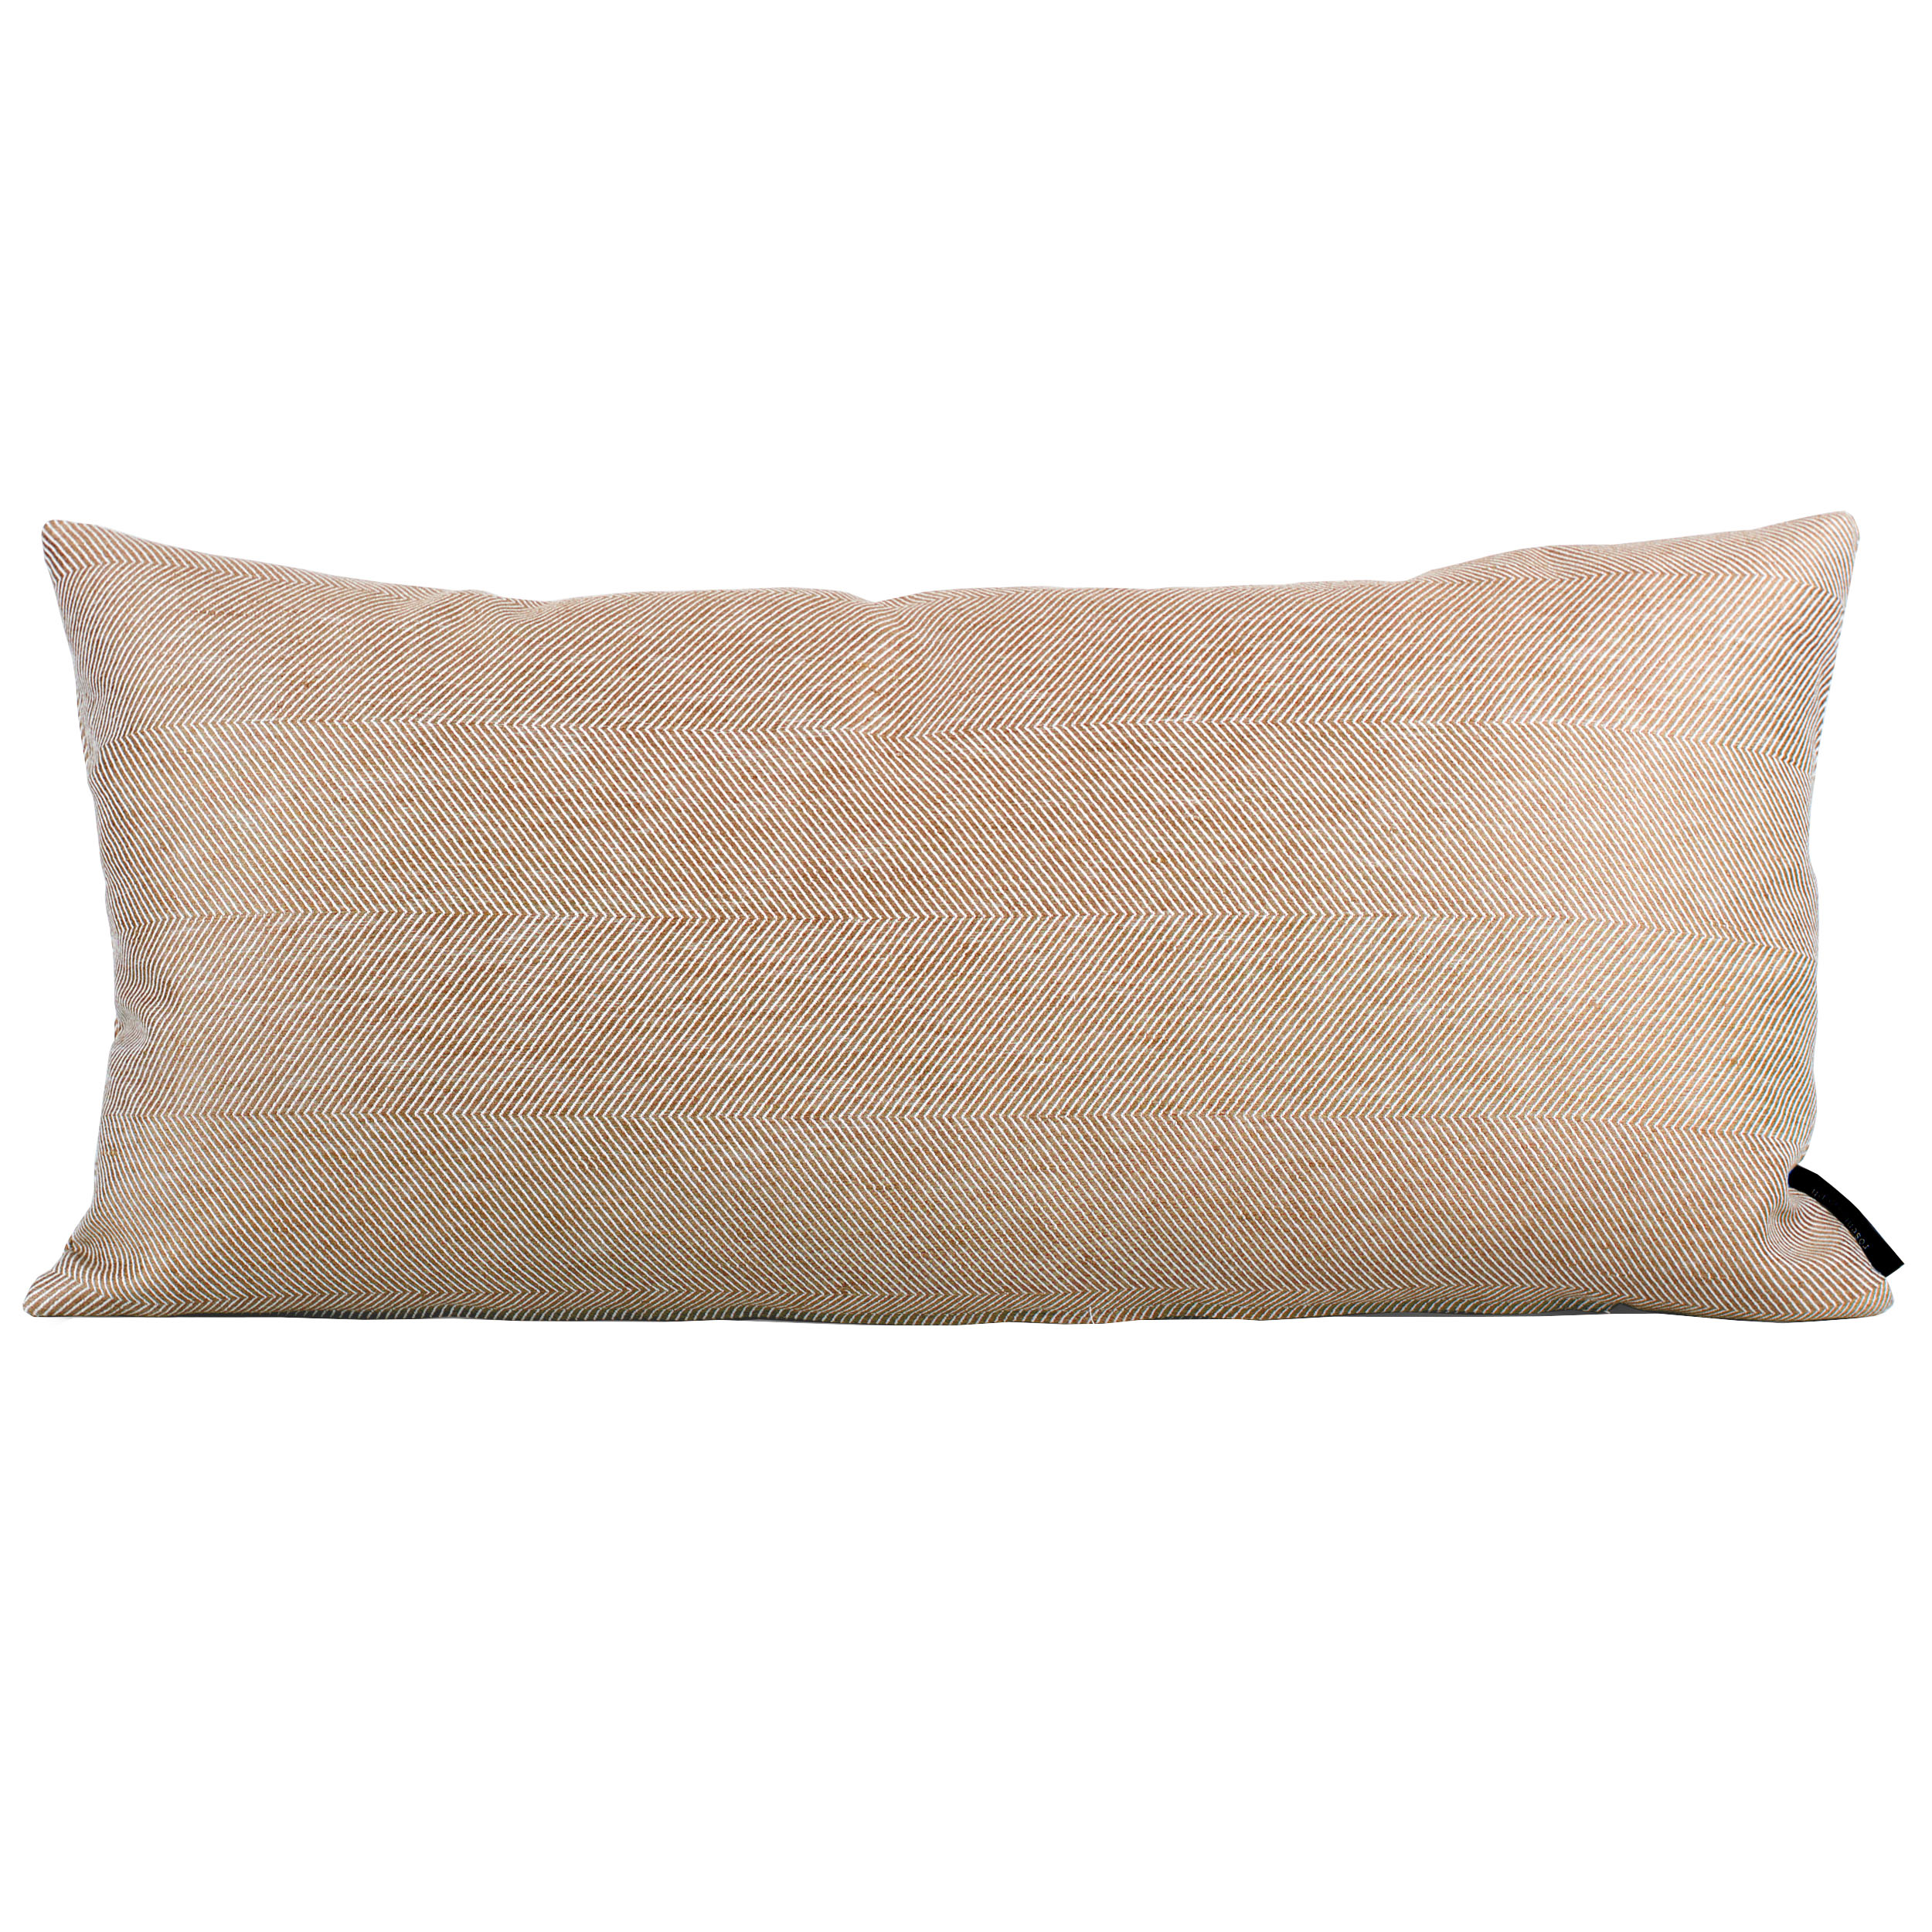 Rectangular cushion linen/cotton Almond, design by Anne Rosenberg, RosenbergCph